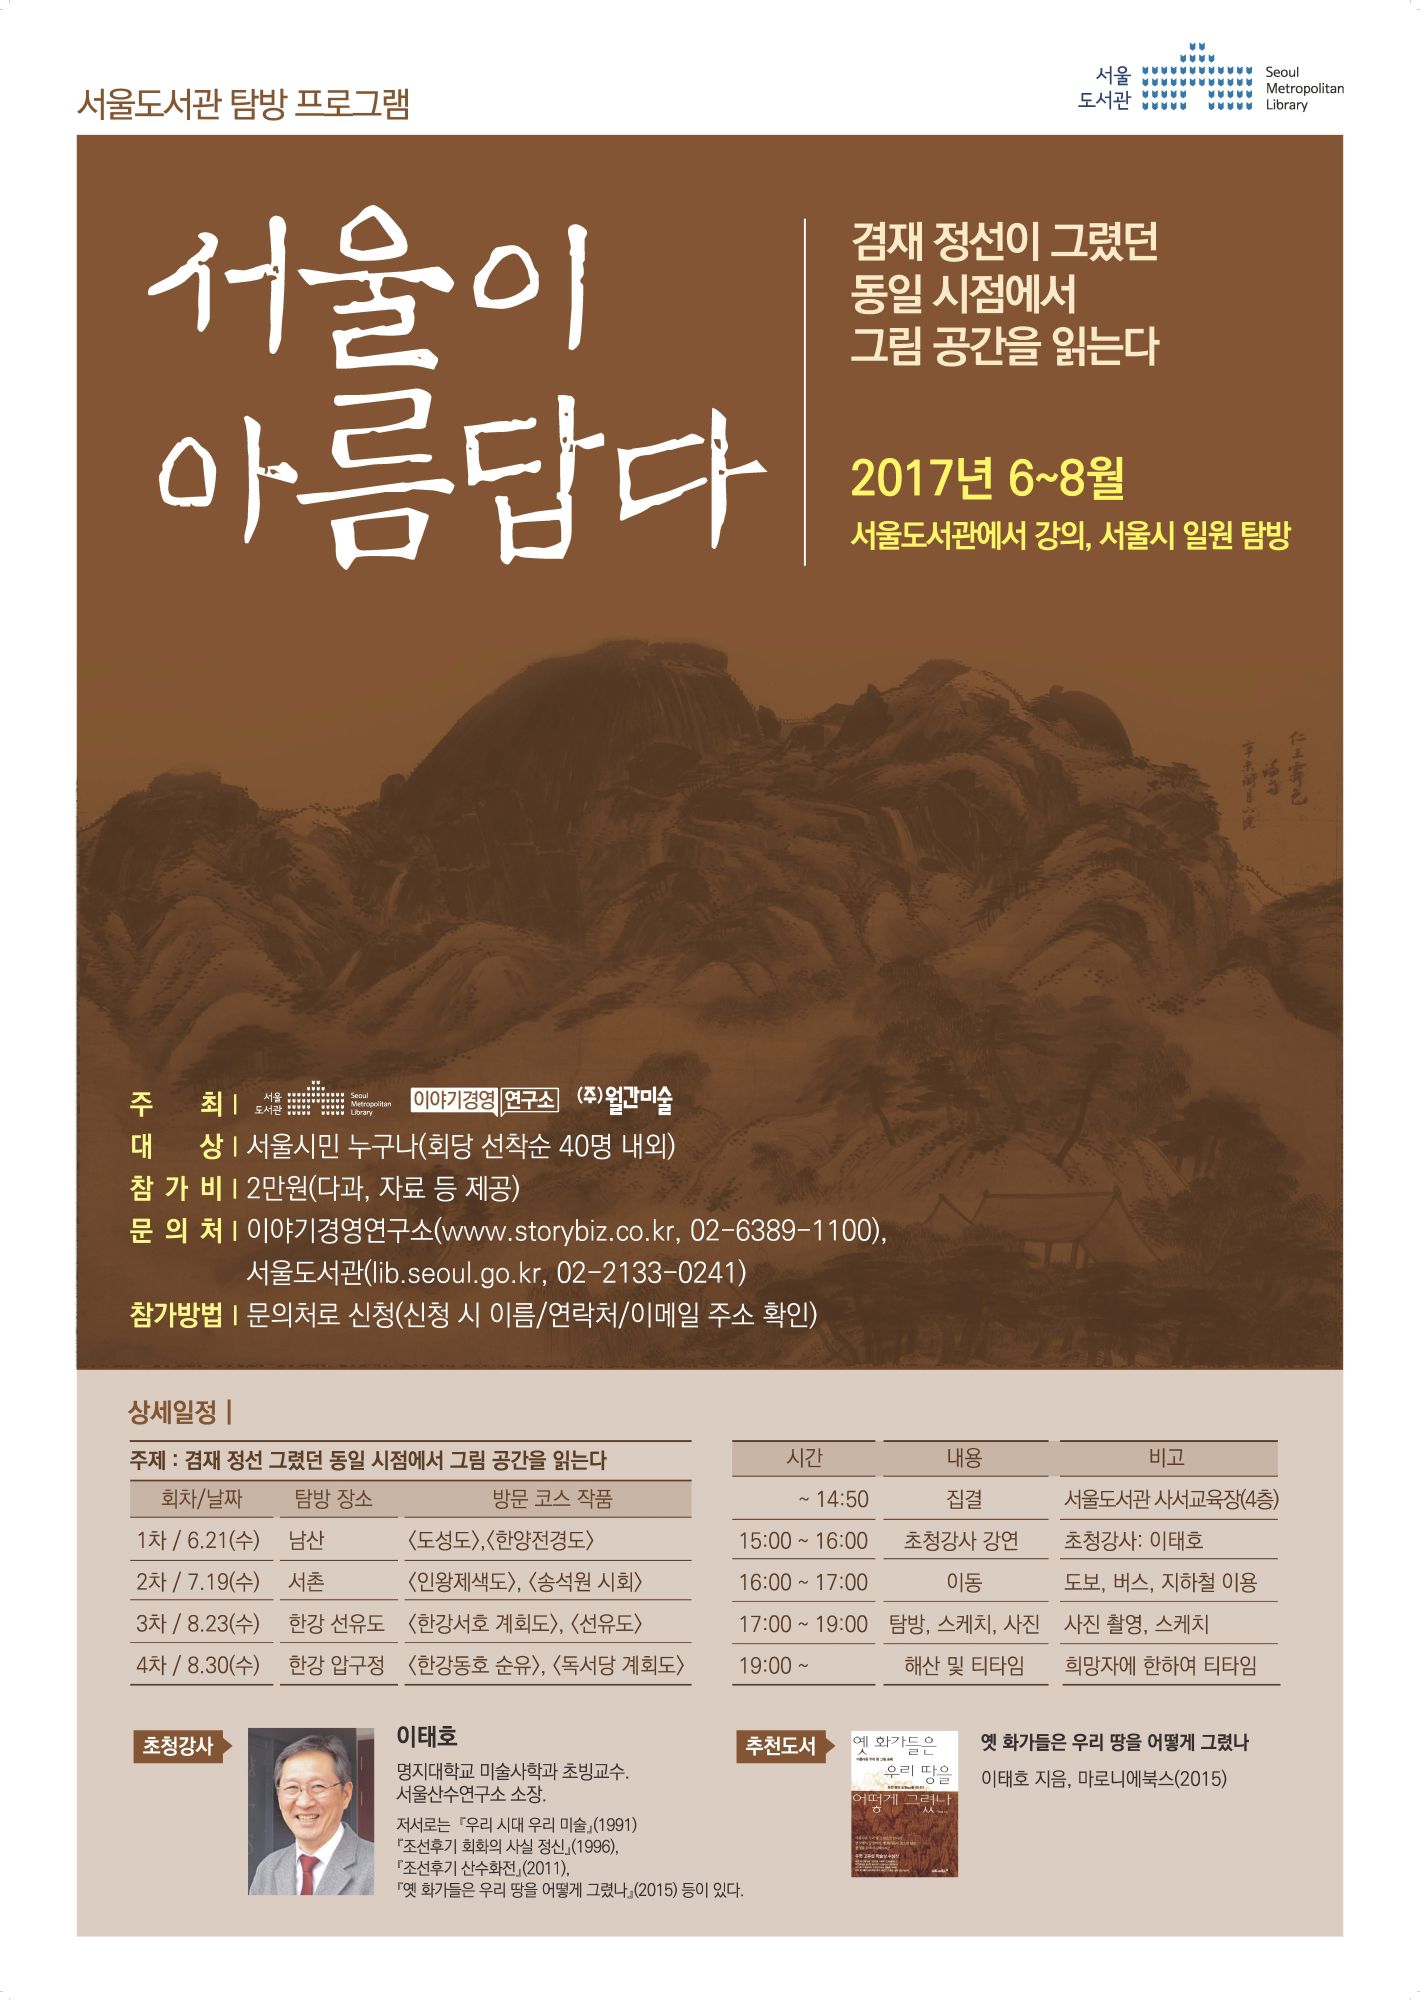 [탐방] 서울이 아름답다 3, 4회 탐방 참가자 모집(선유도, 압구정)  포스터